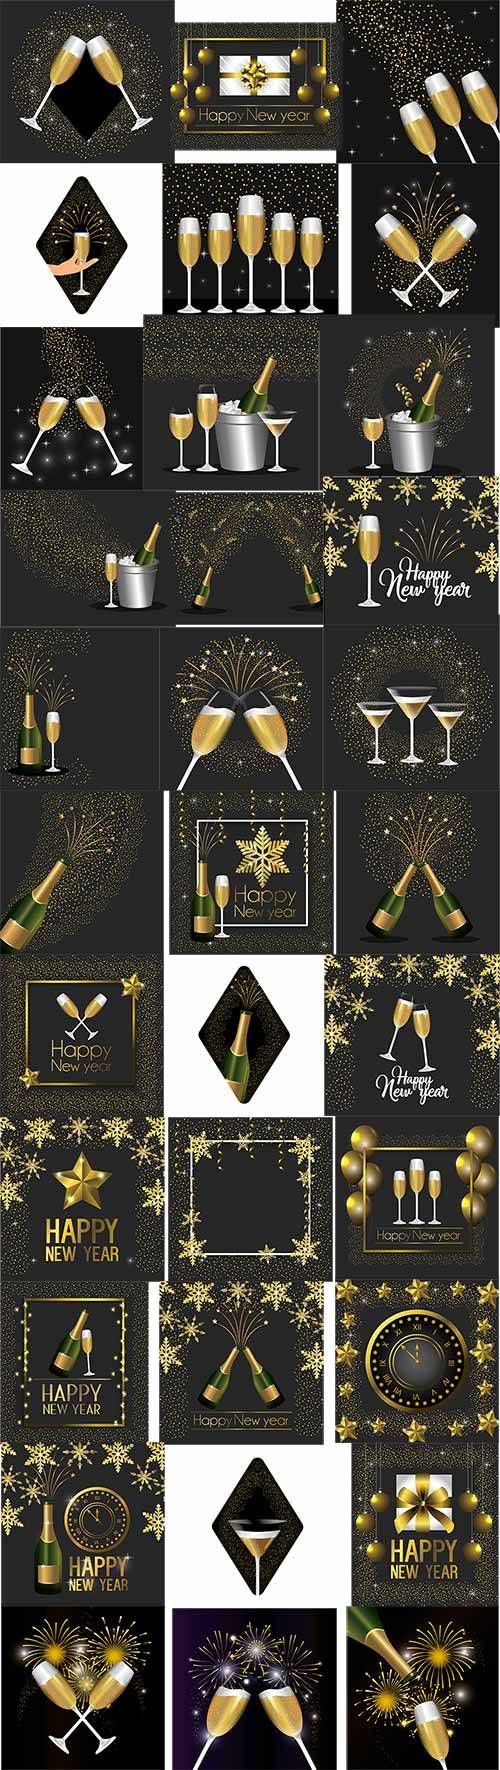 Бокалы с шампанским, звёзды, шары, блеск, часы - Новогодние элементы в векторе